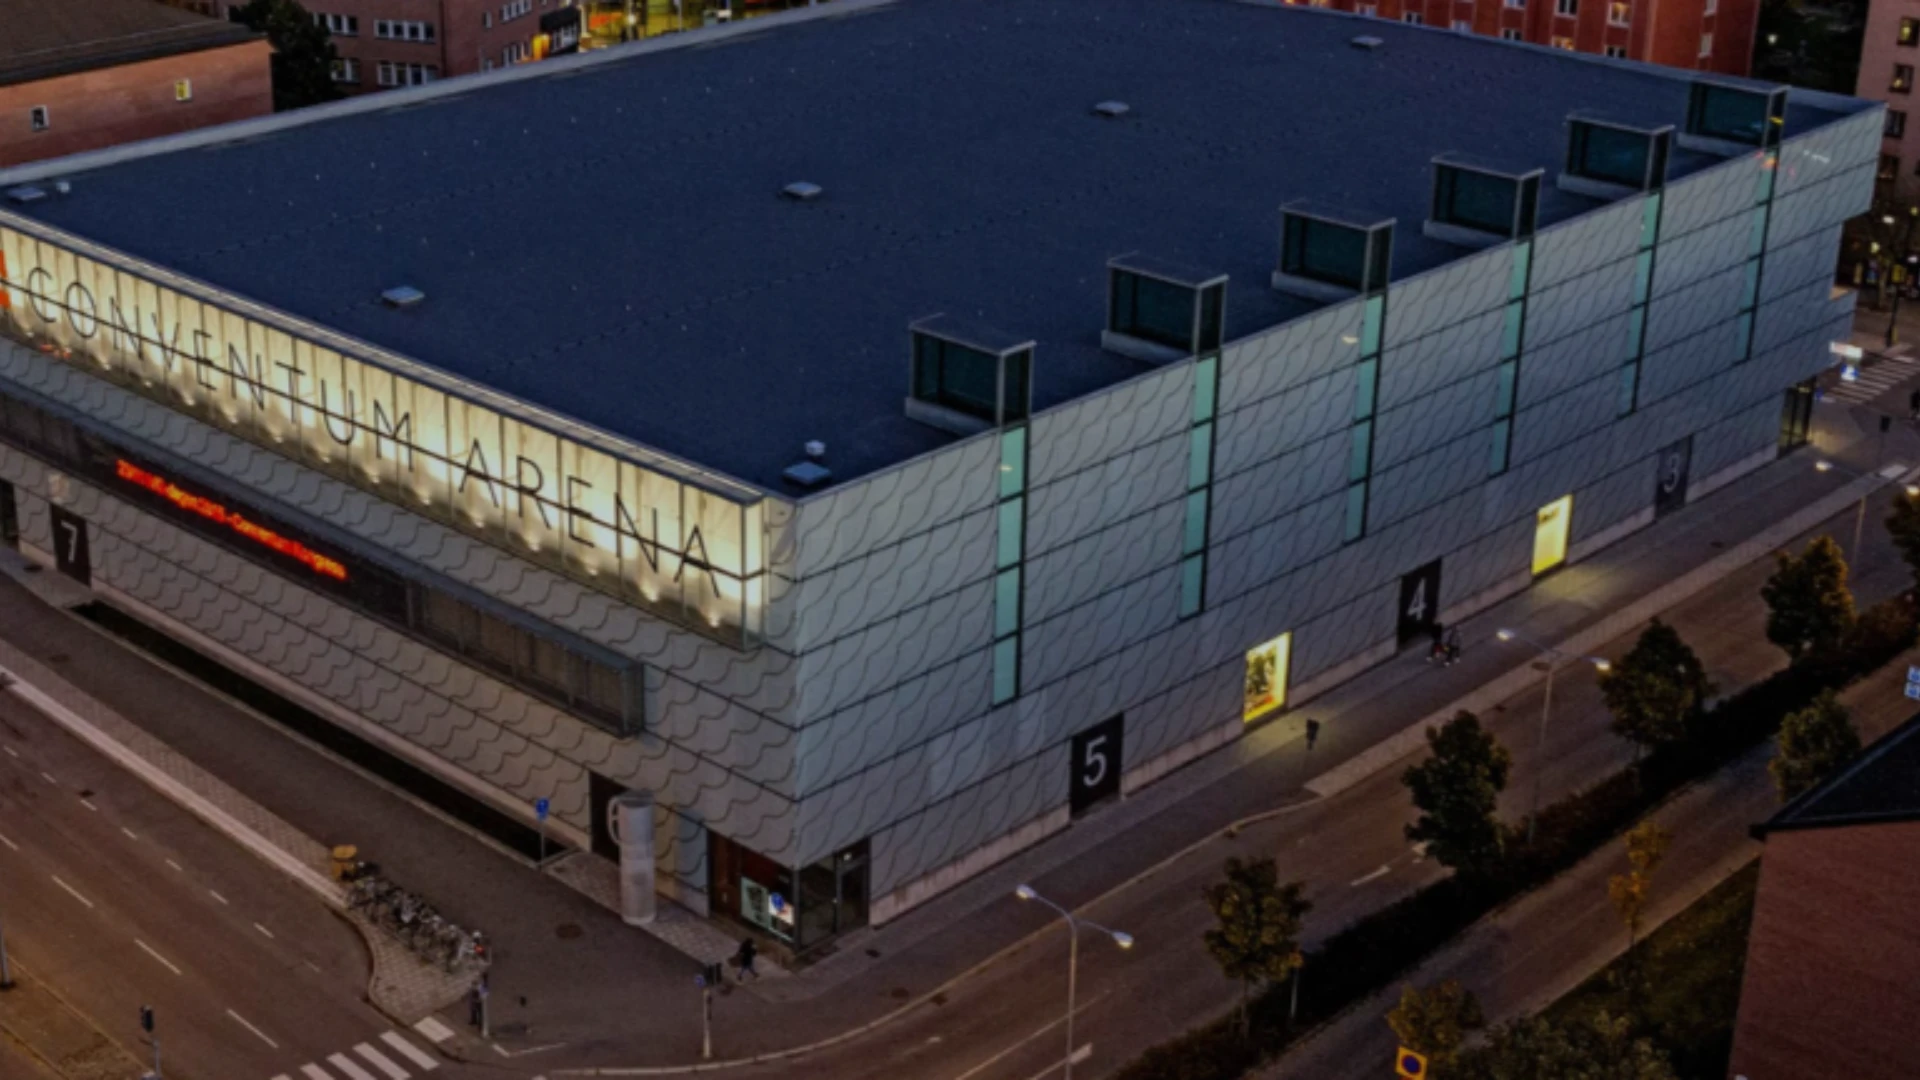 Conventum arena i Örebro